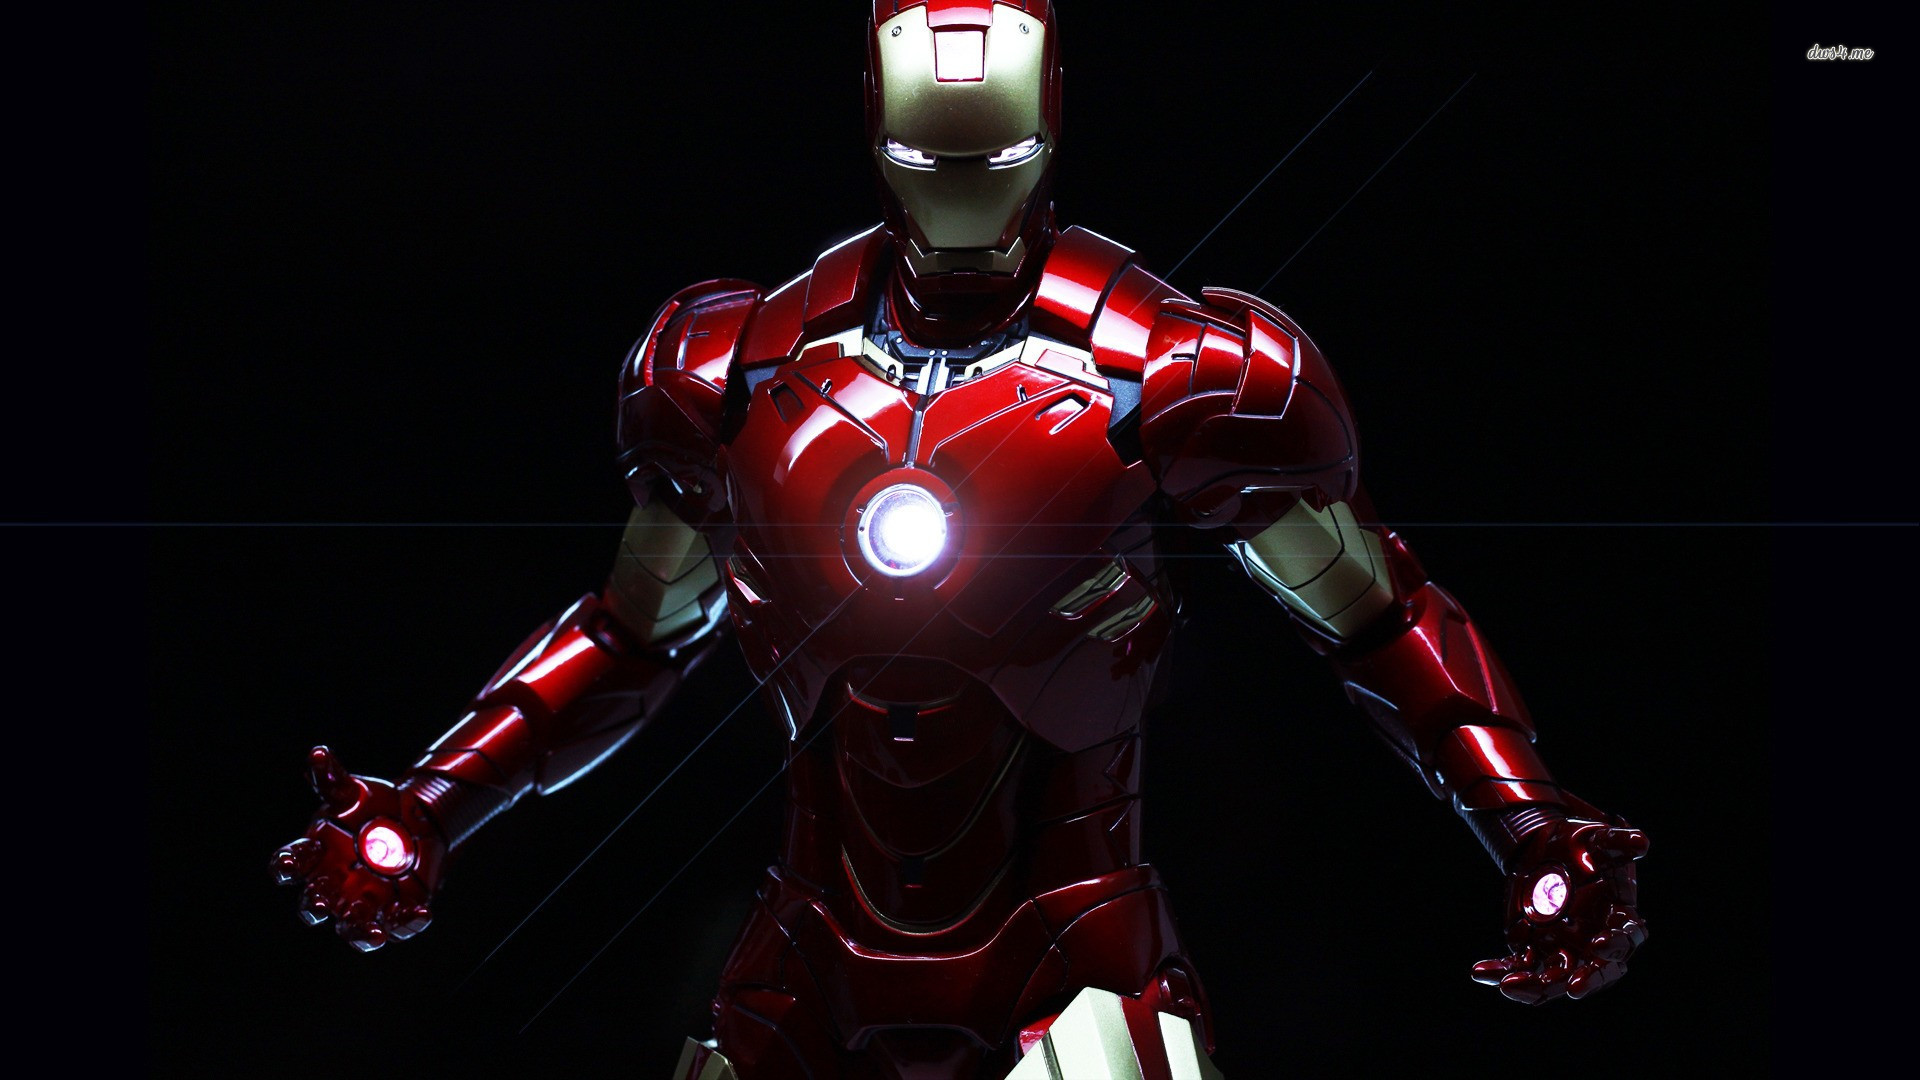 Avengers Iron Man Background Wallpaper Hd #3486 Wallpaper ...